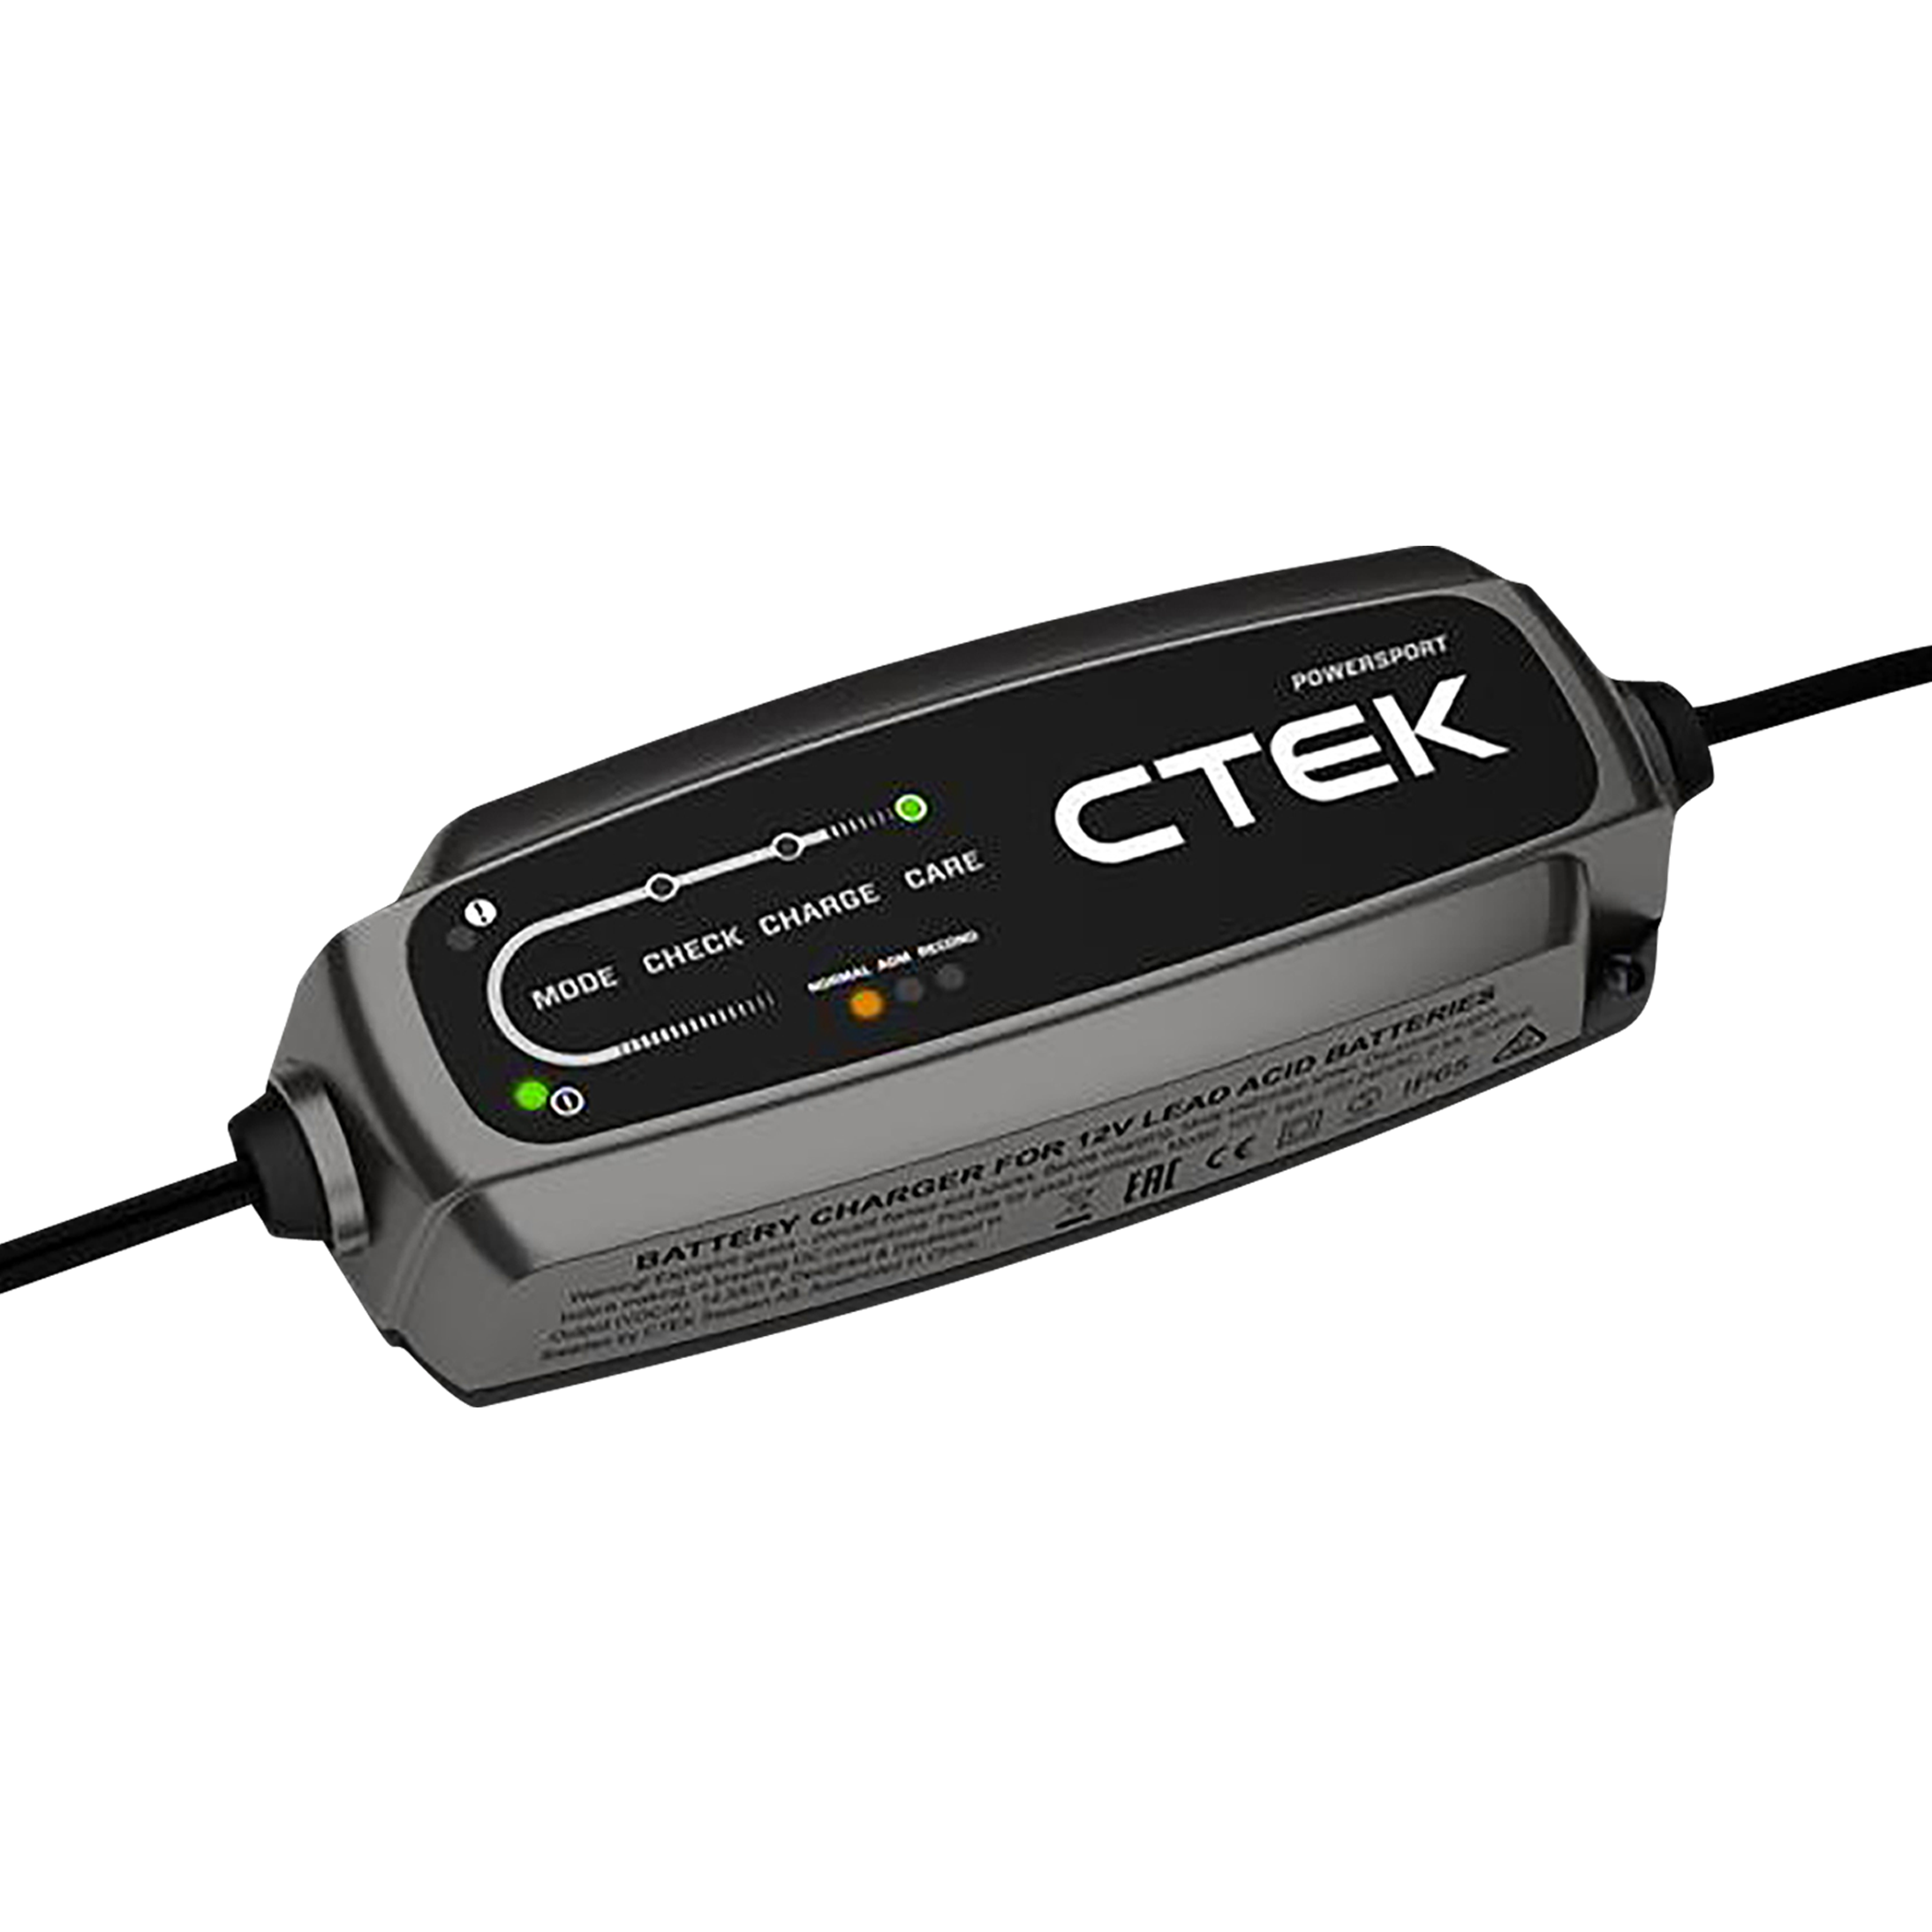 CTEK XS 0.8 Battery Charger - Get it dirt cheap!